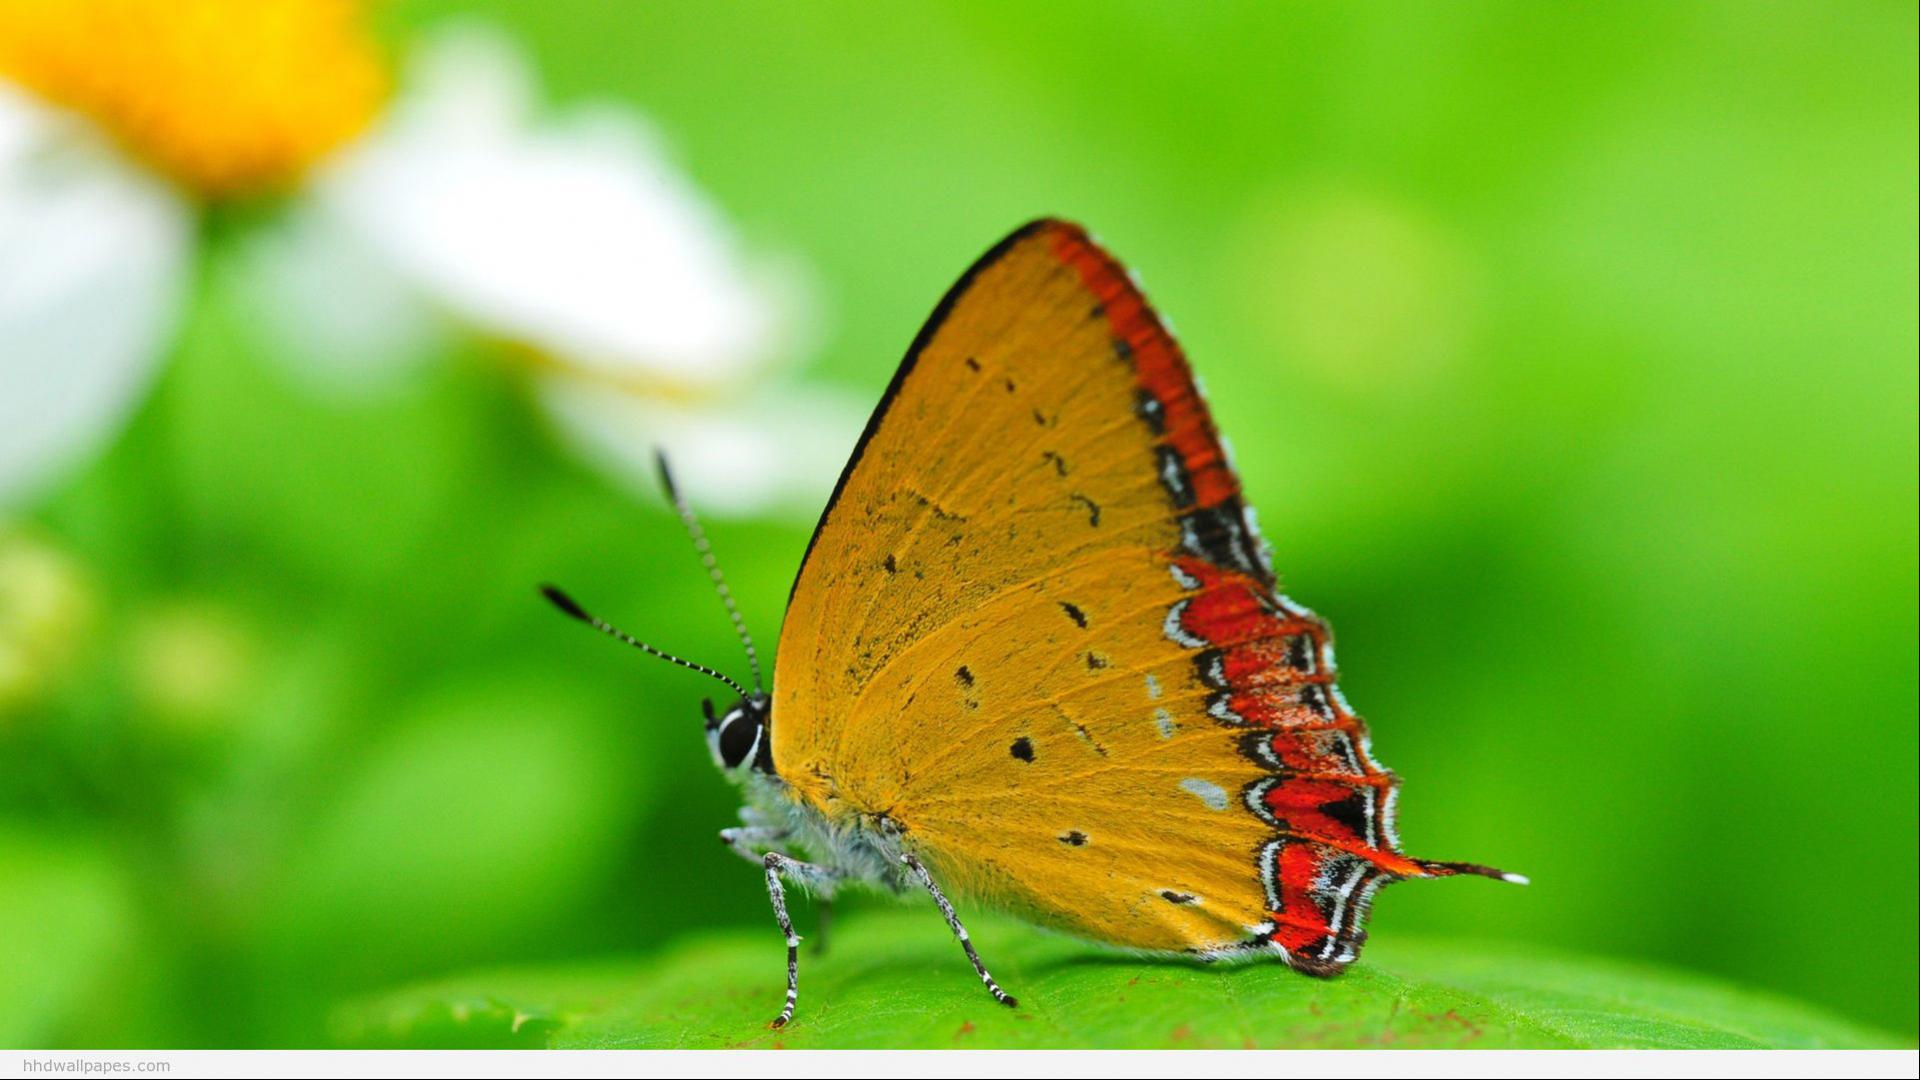 fonds d'écran hd pour pc 1080p téléchargement gratuit,papillons et papillons,papillon,insecte,invertébré,lycaénide